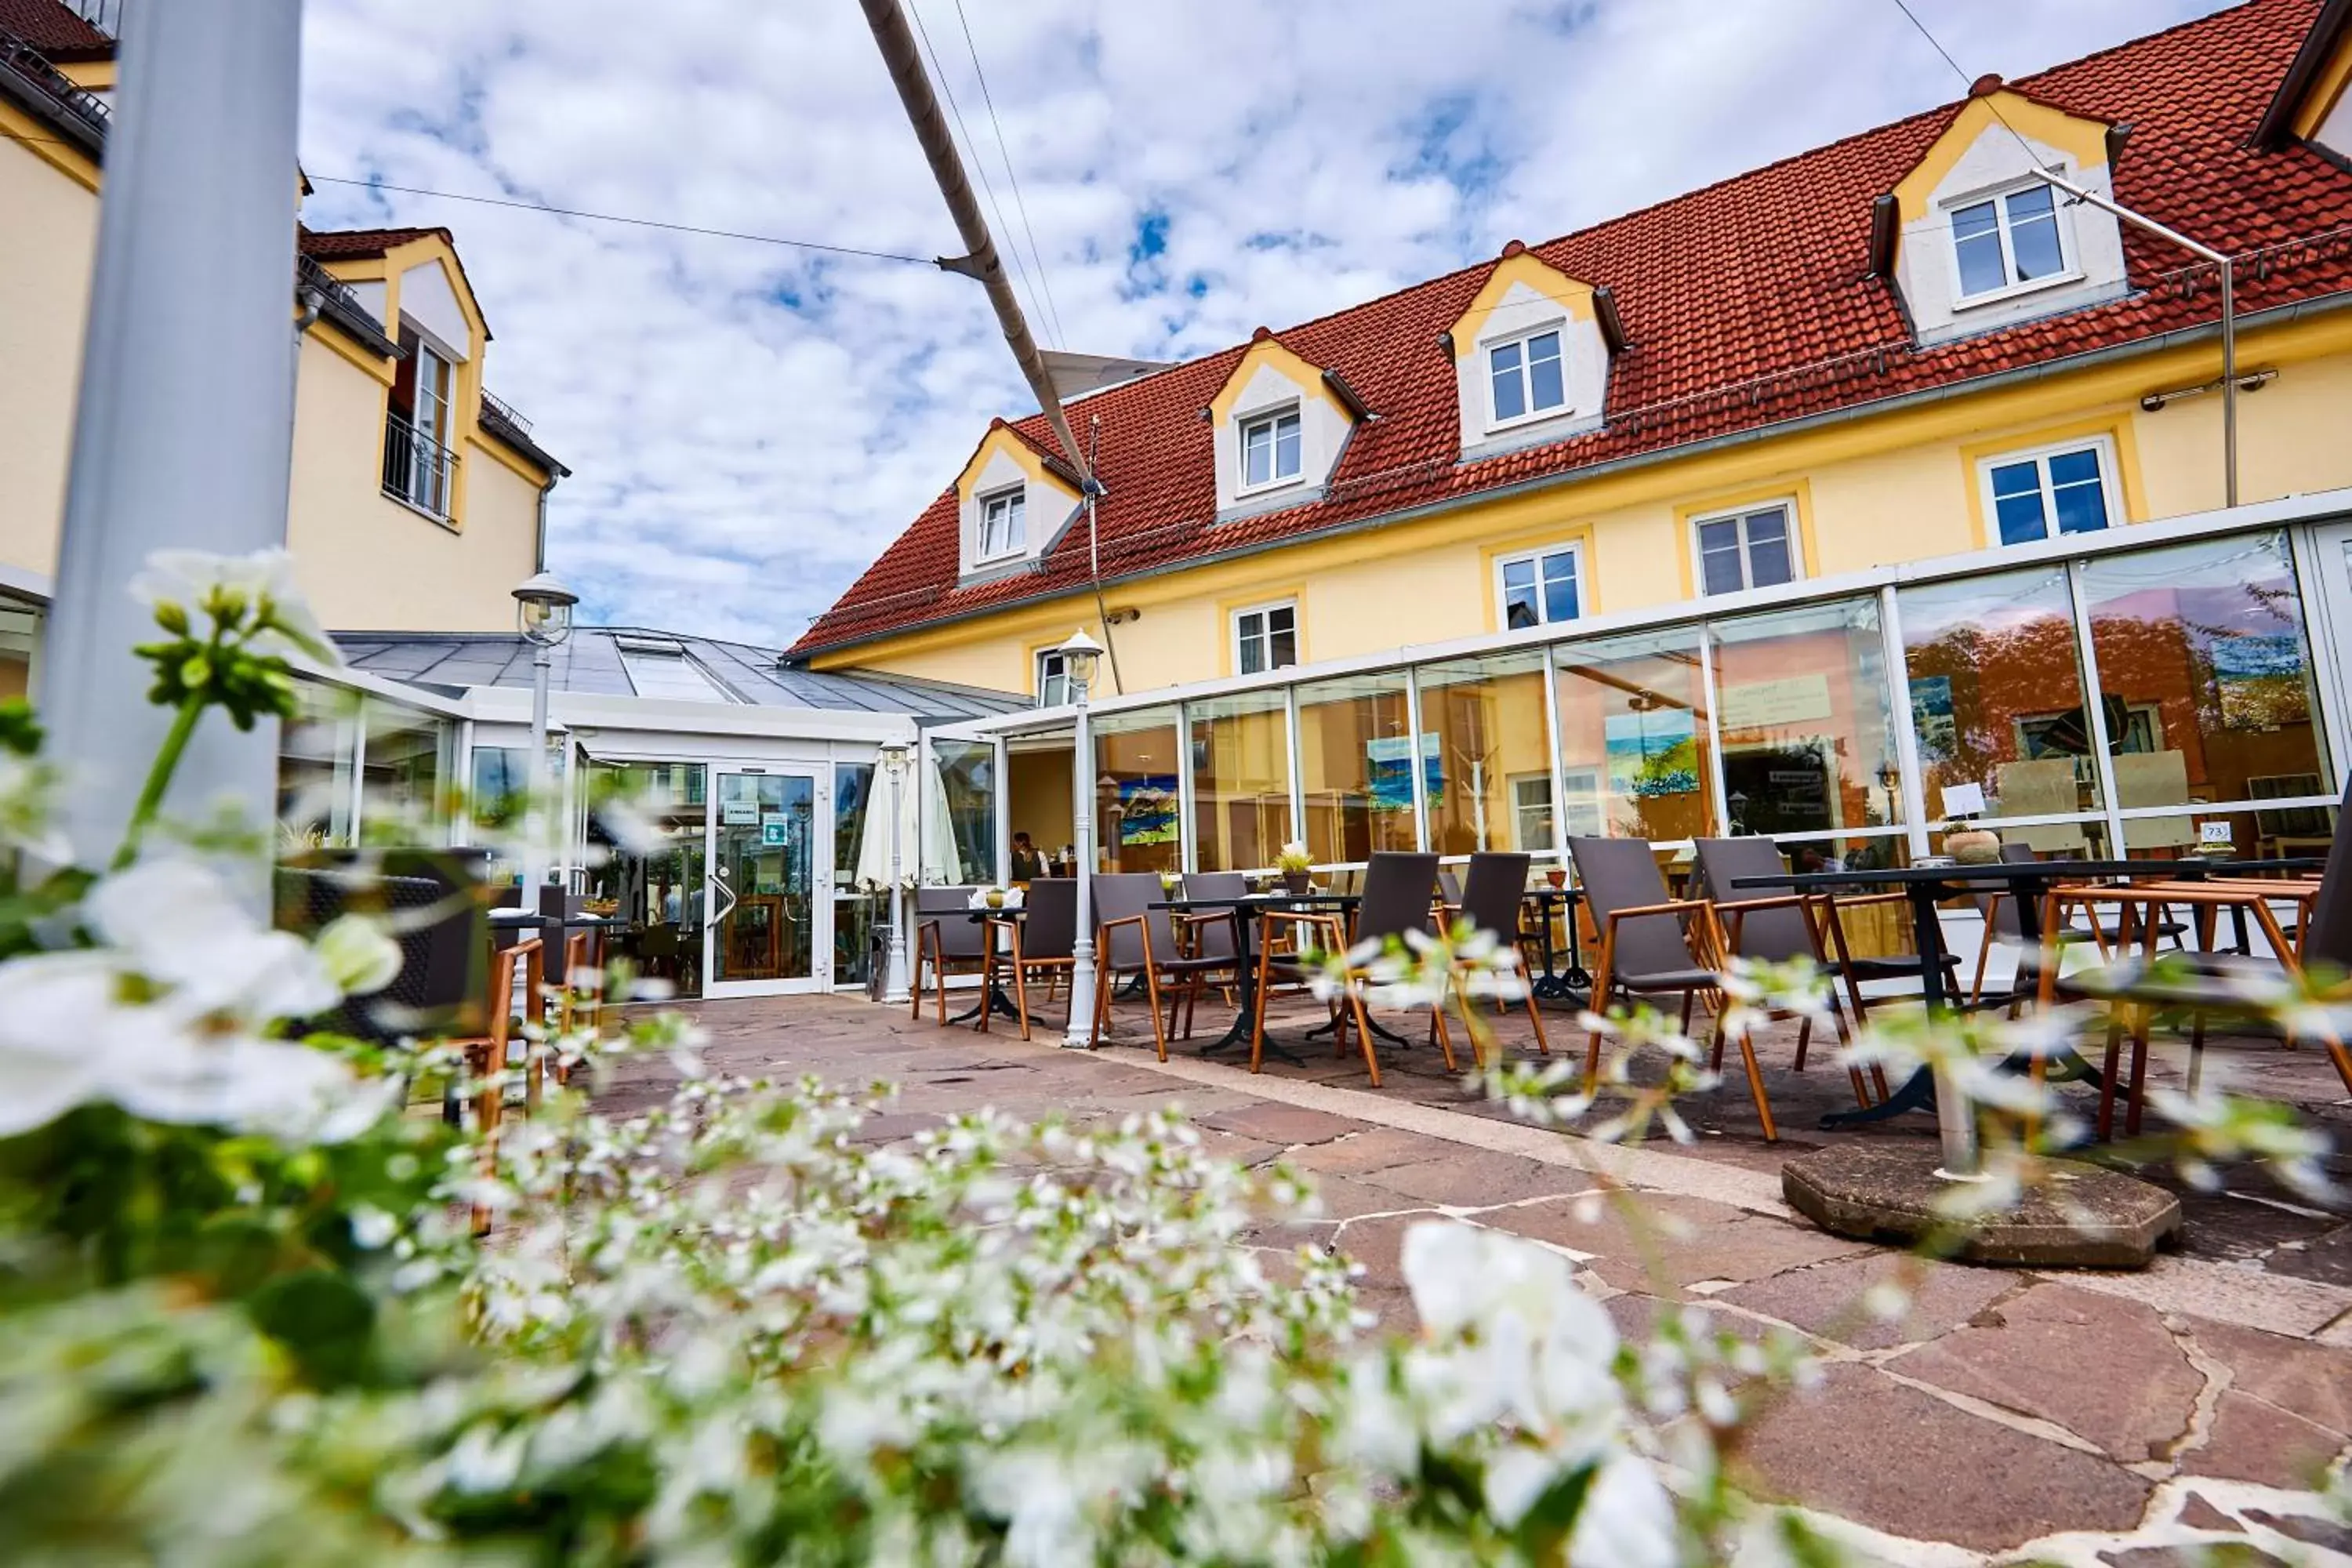 Property building, Restaurant/Places to Eat in Flair Hotel Zum Schwarzen Reiter